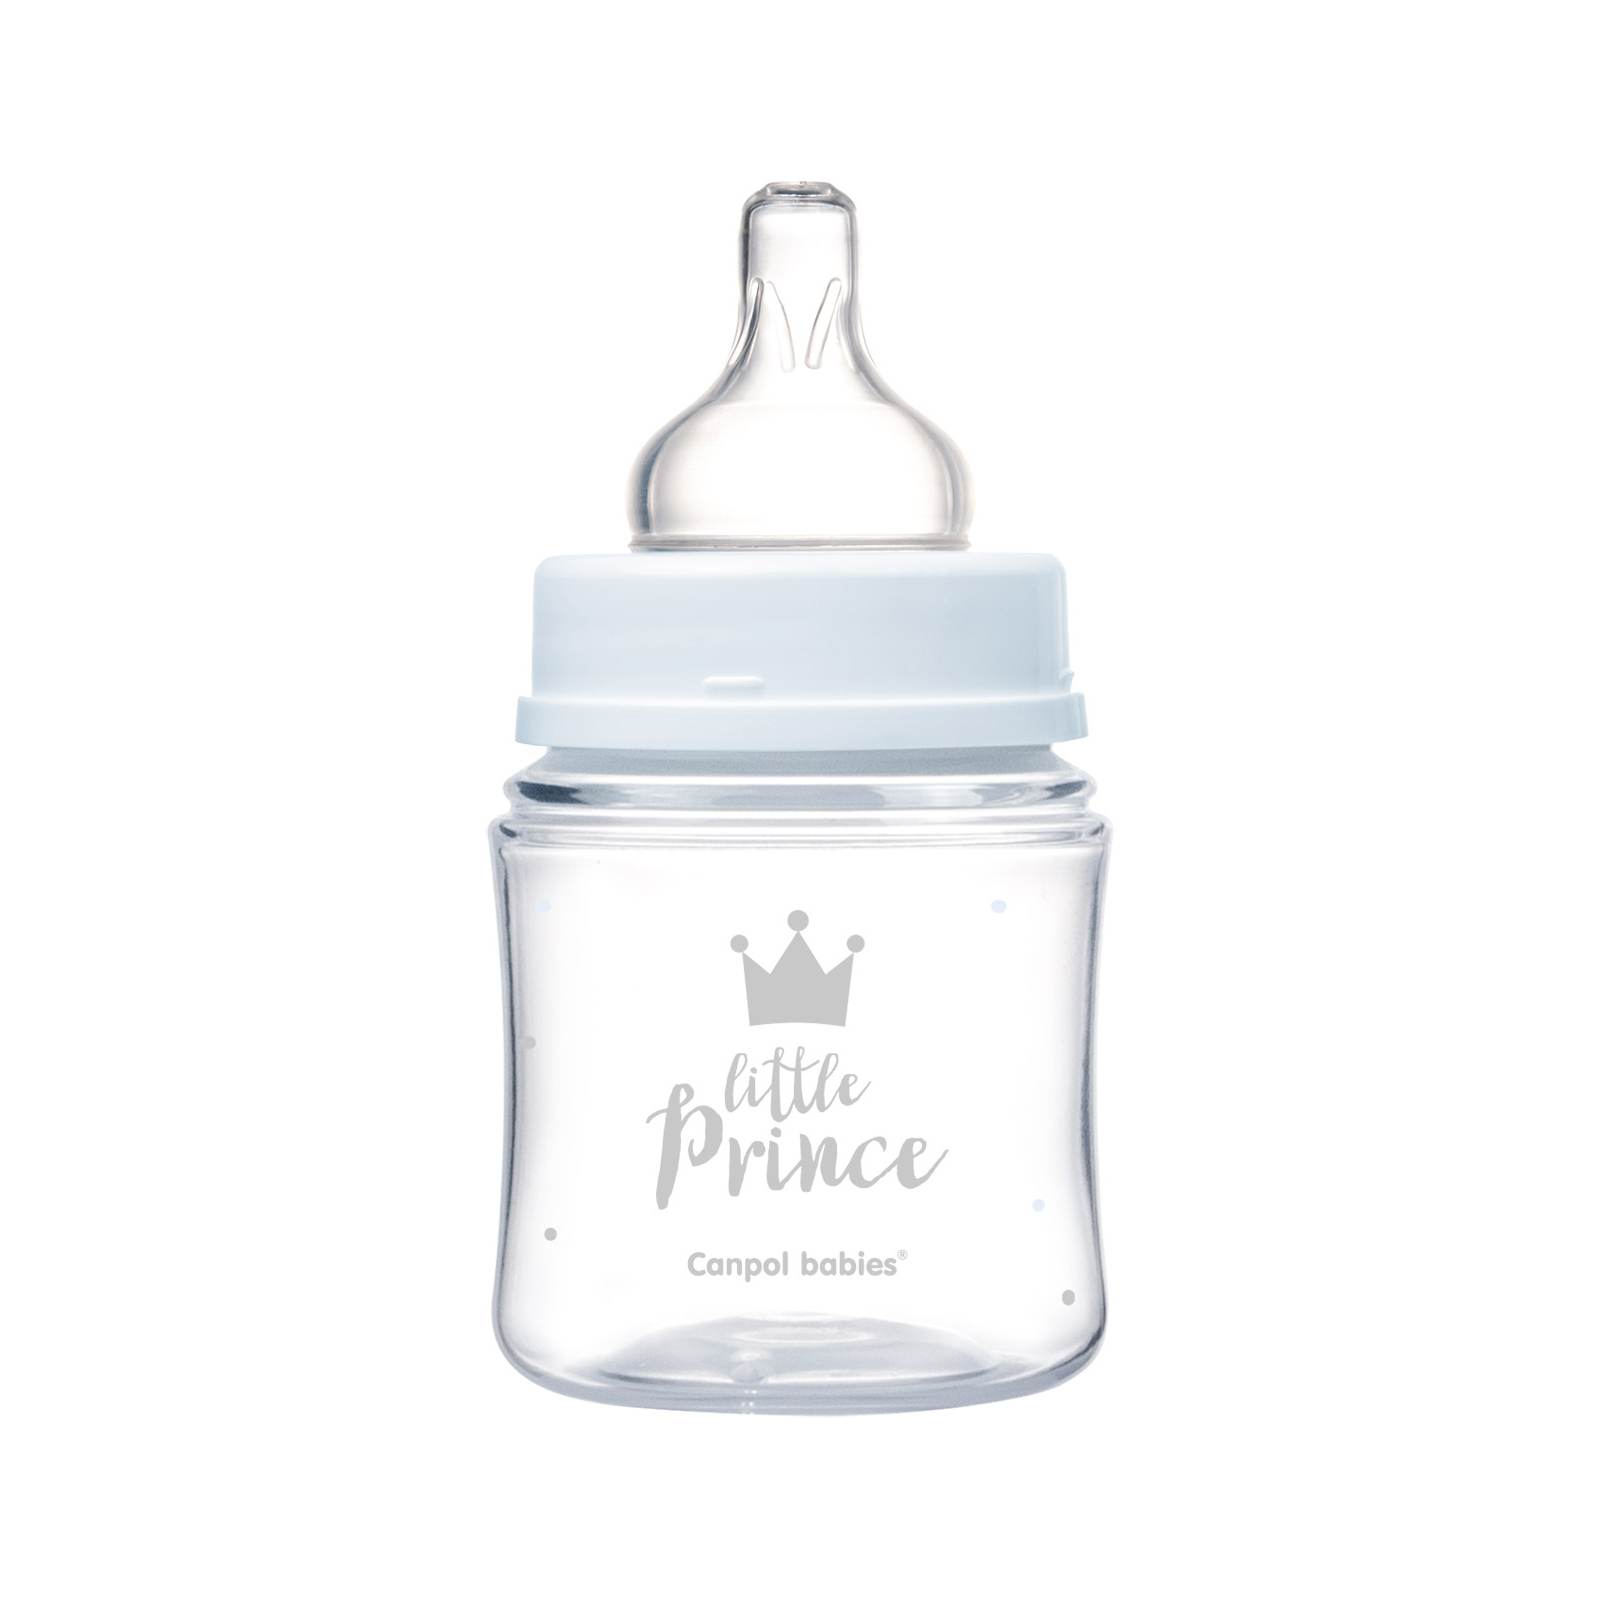 Бутылочка для кормления Canpol babies Royal Baby с широким отверстием 240 мл Синяя (35/234_blu) изображение 3